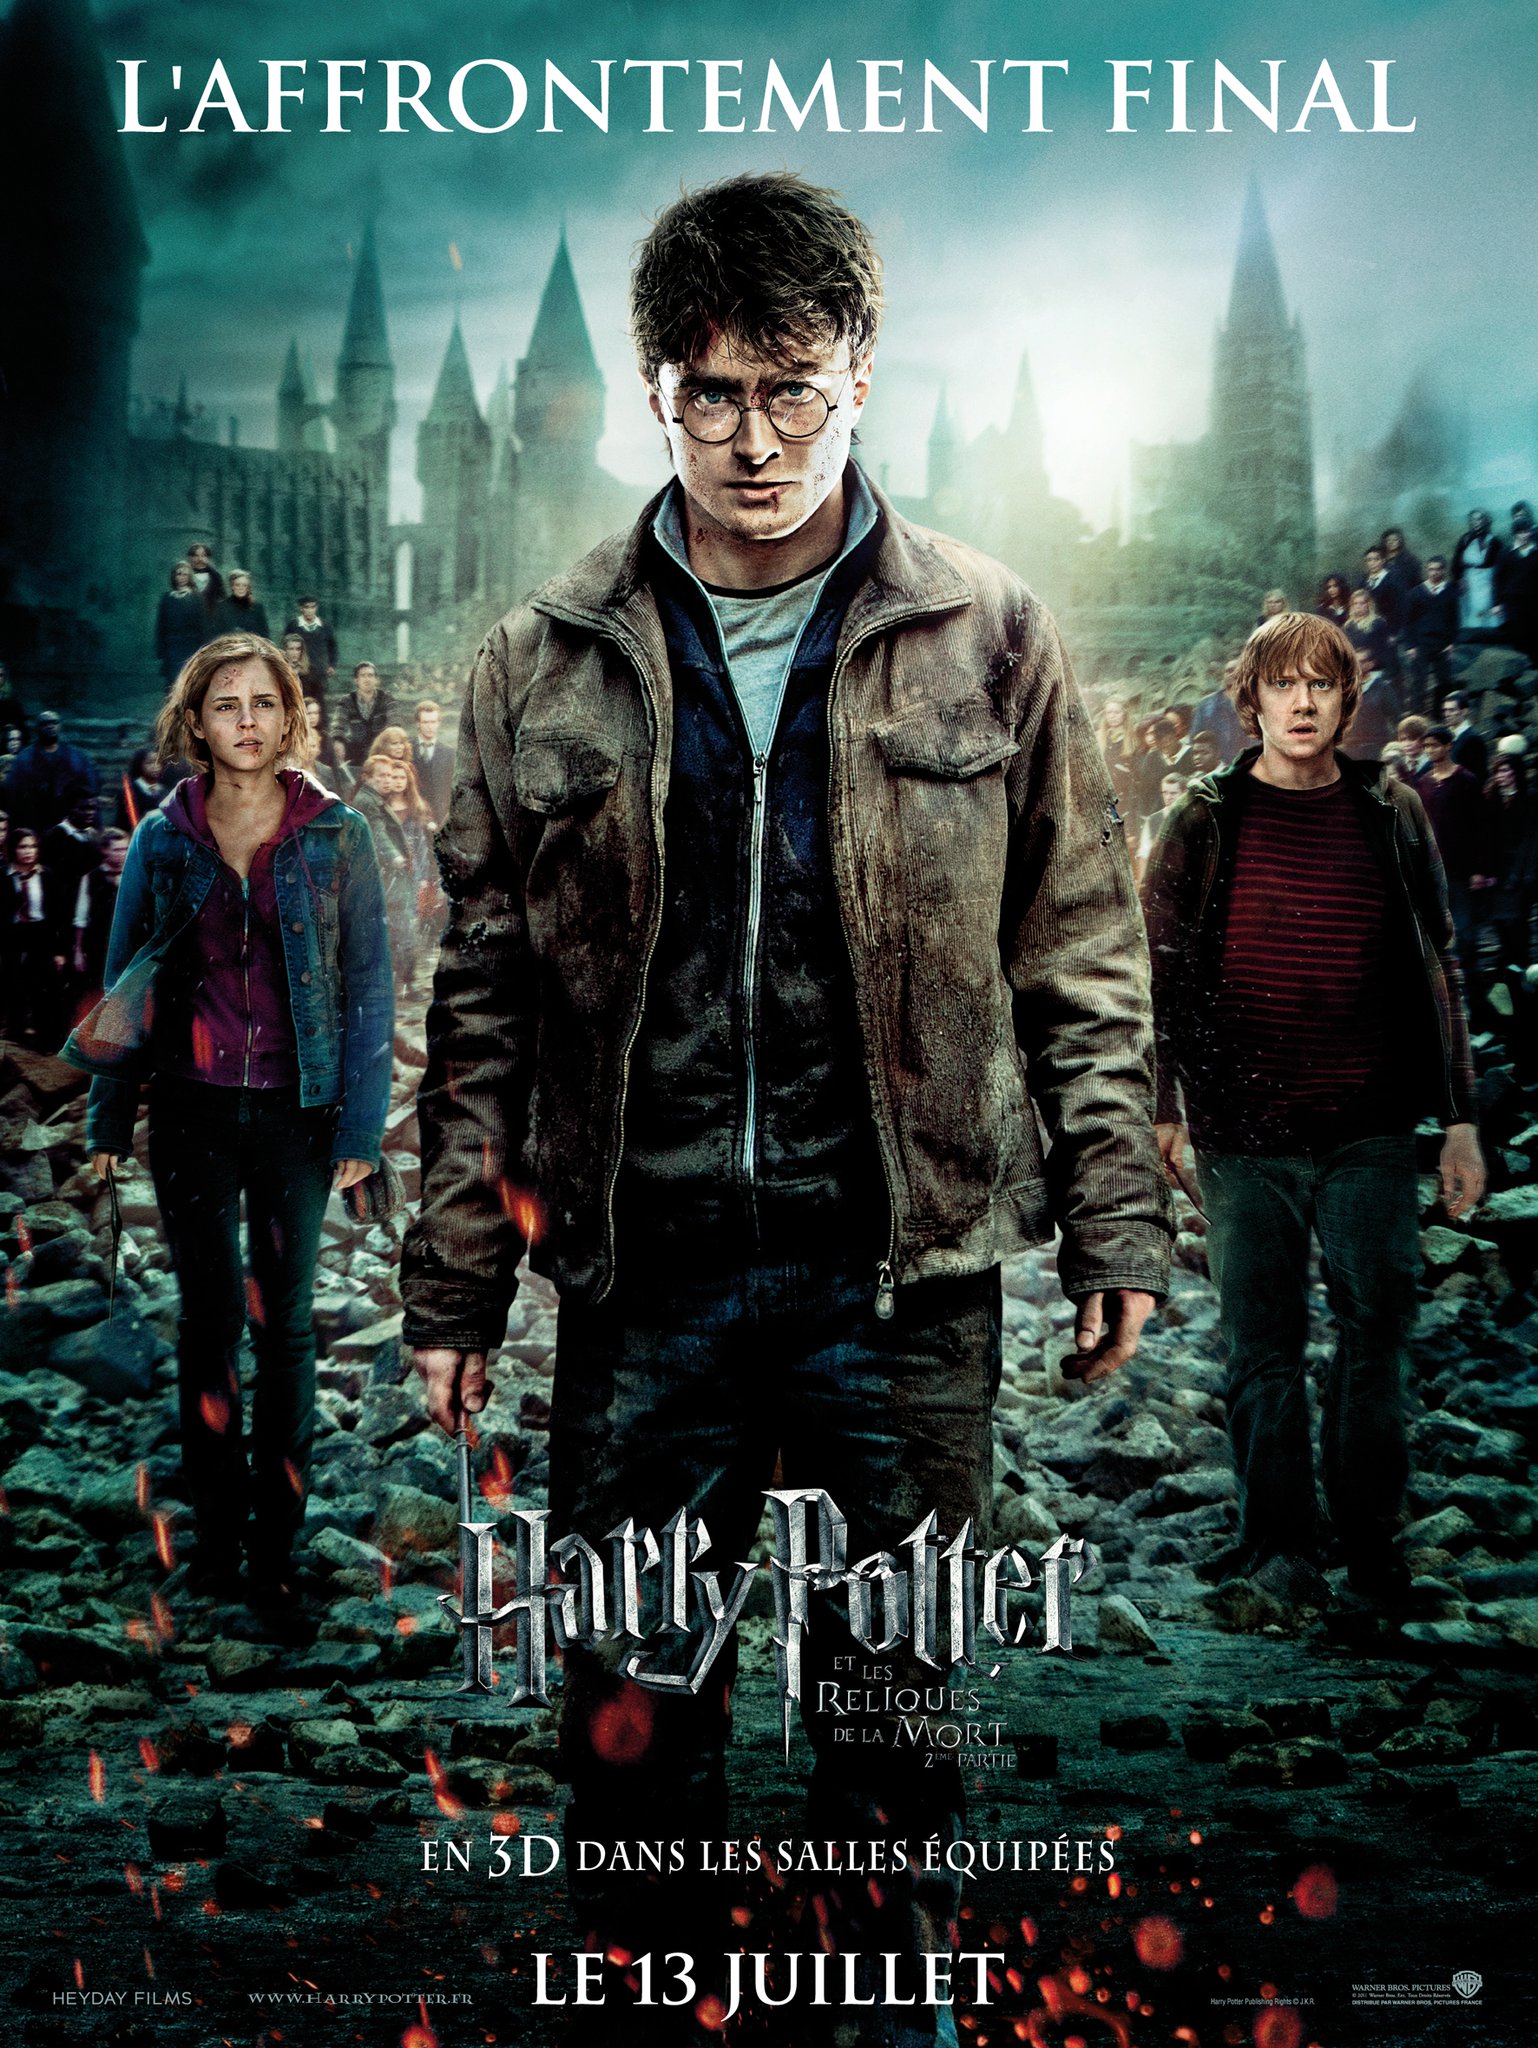 Jeu Potions Magiques Harry Potter - 3 Reliques Harry Potter